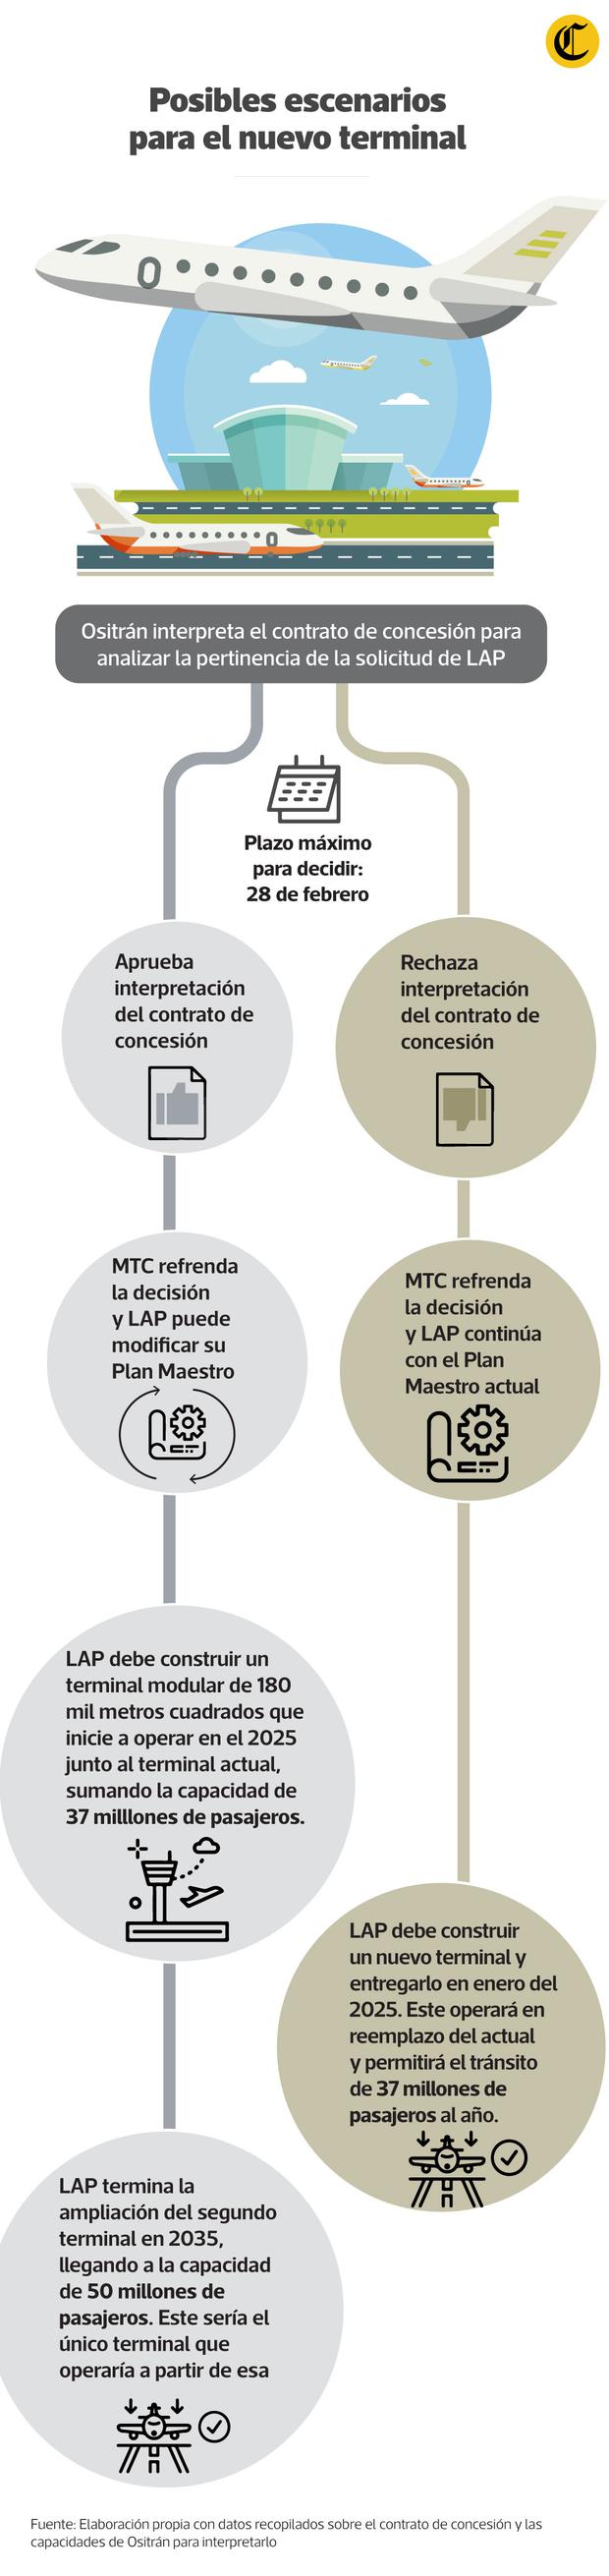 Los dos caminos que podría tomar la ampliación del Aeropuerto Jorge Chávez tras la interpretación de contrato. (Infografía: GEC)